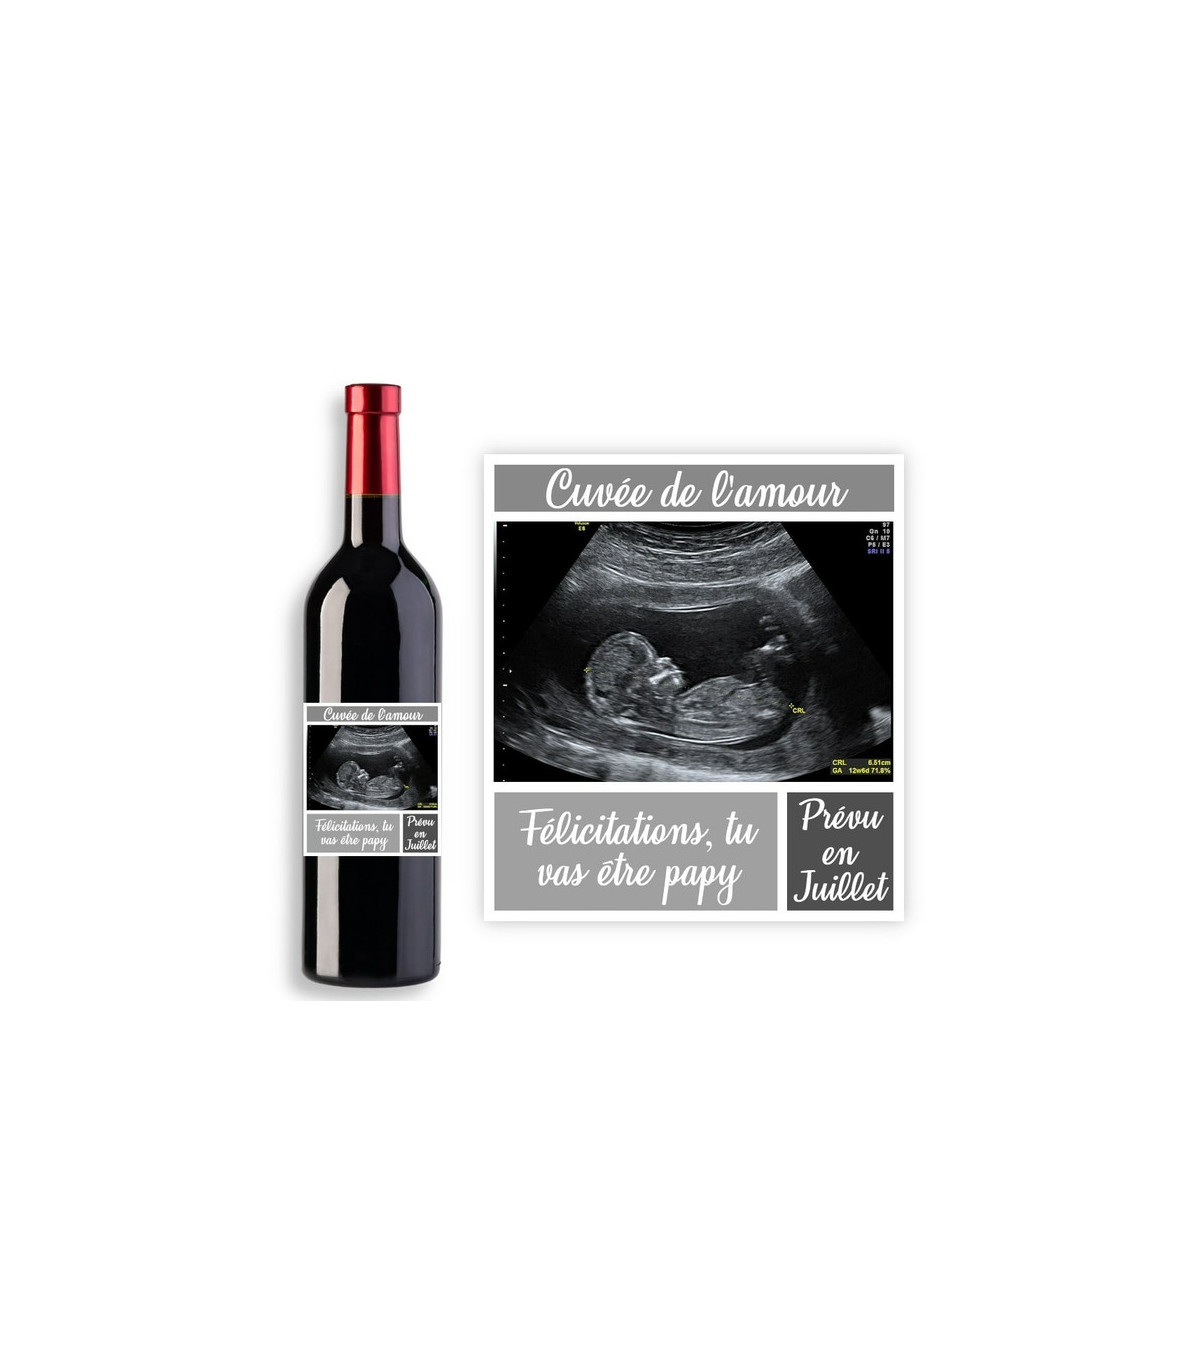 Etiquettes de vin annonce grossesse